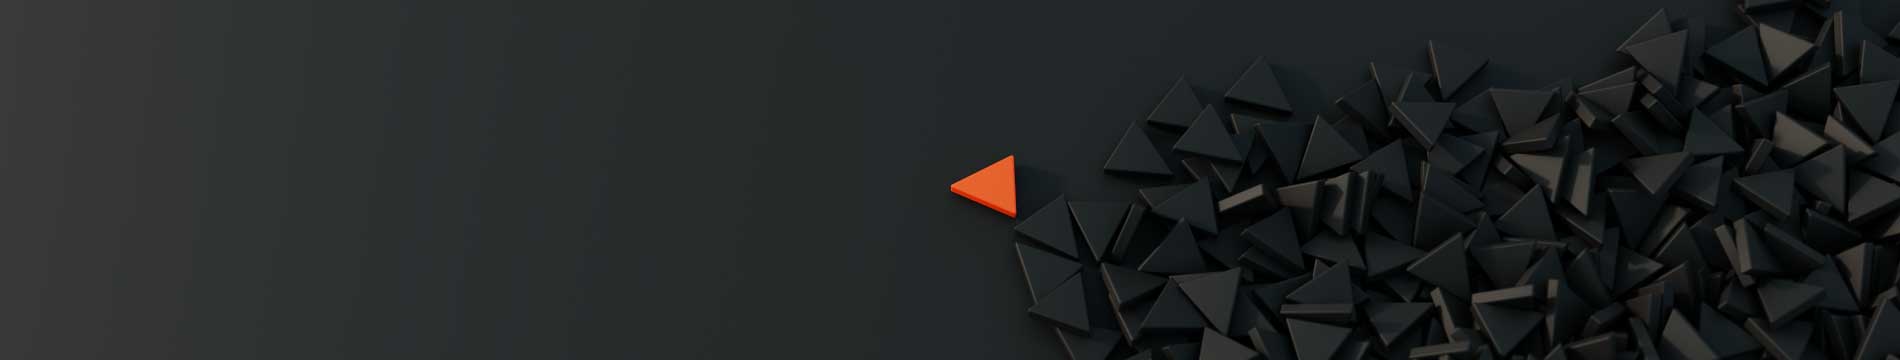 MCM2 | Digital Marketing Agency Nantwich | orange triangle